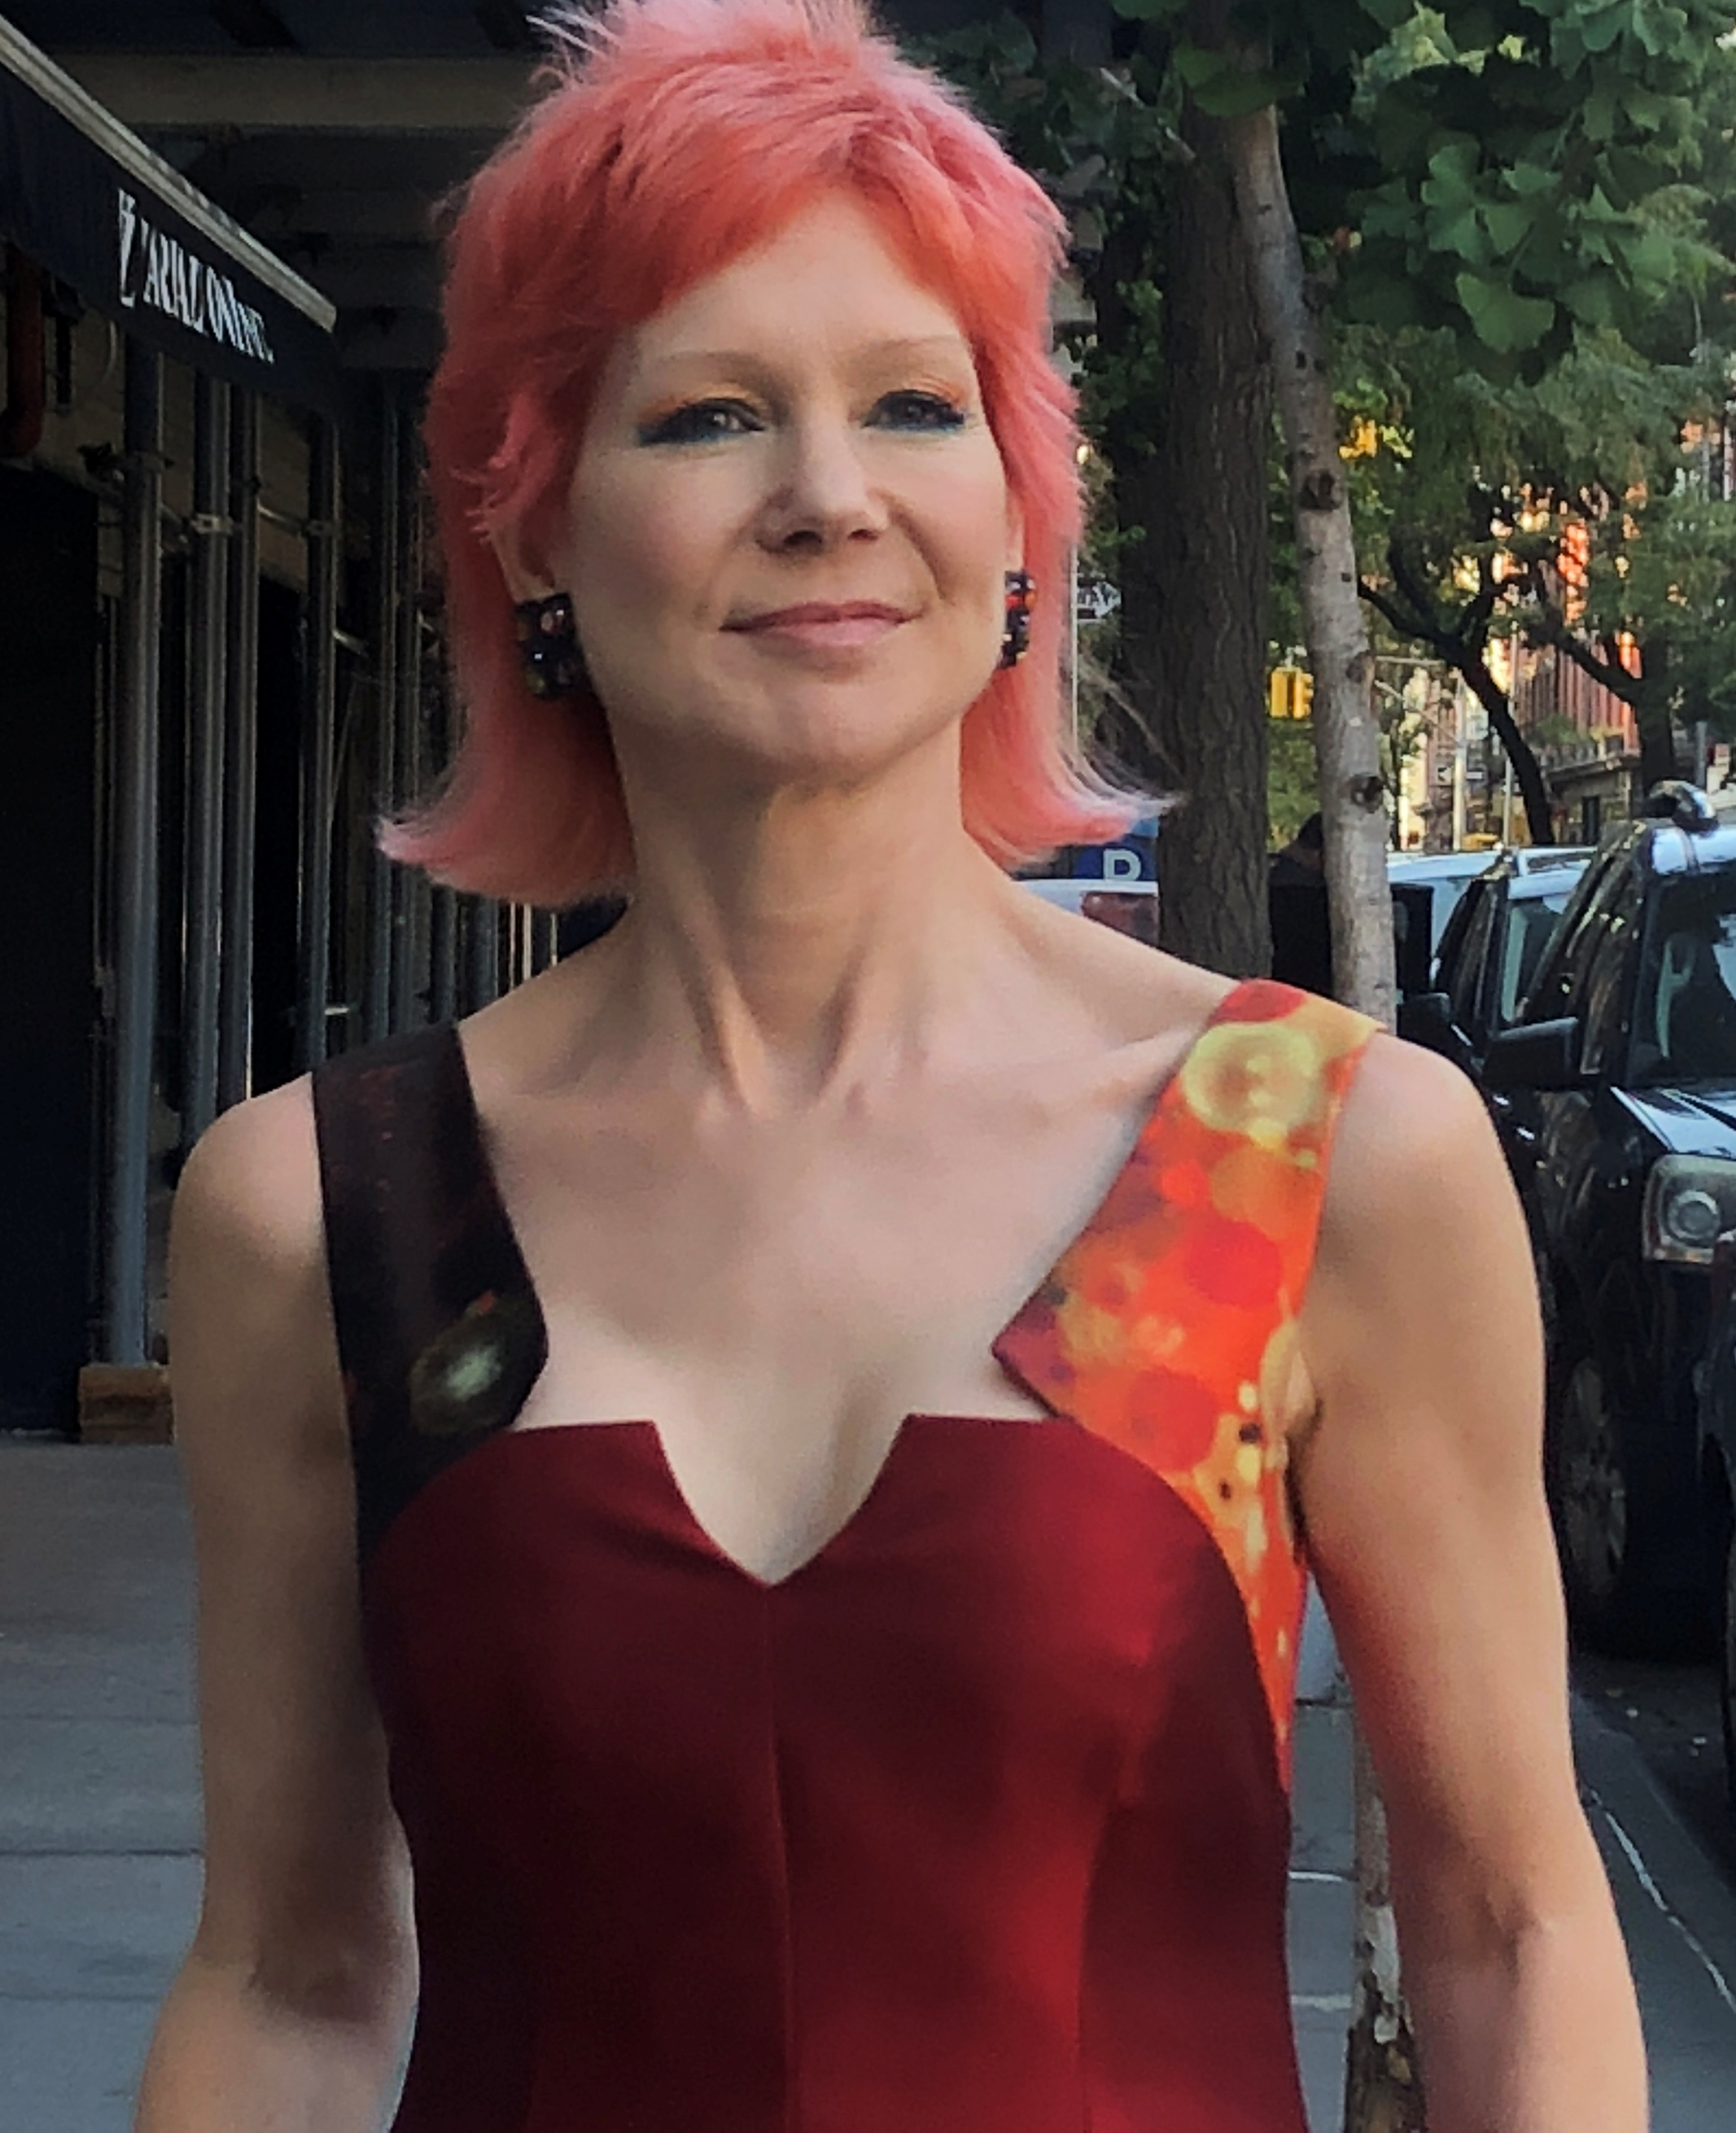 Poggi Earrings - Karen's Quirky Style - West Village New York Model Karen Rempel